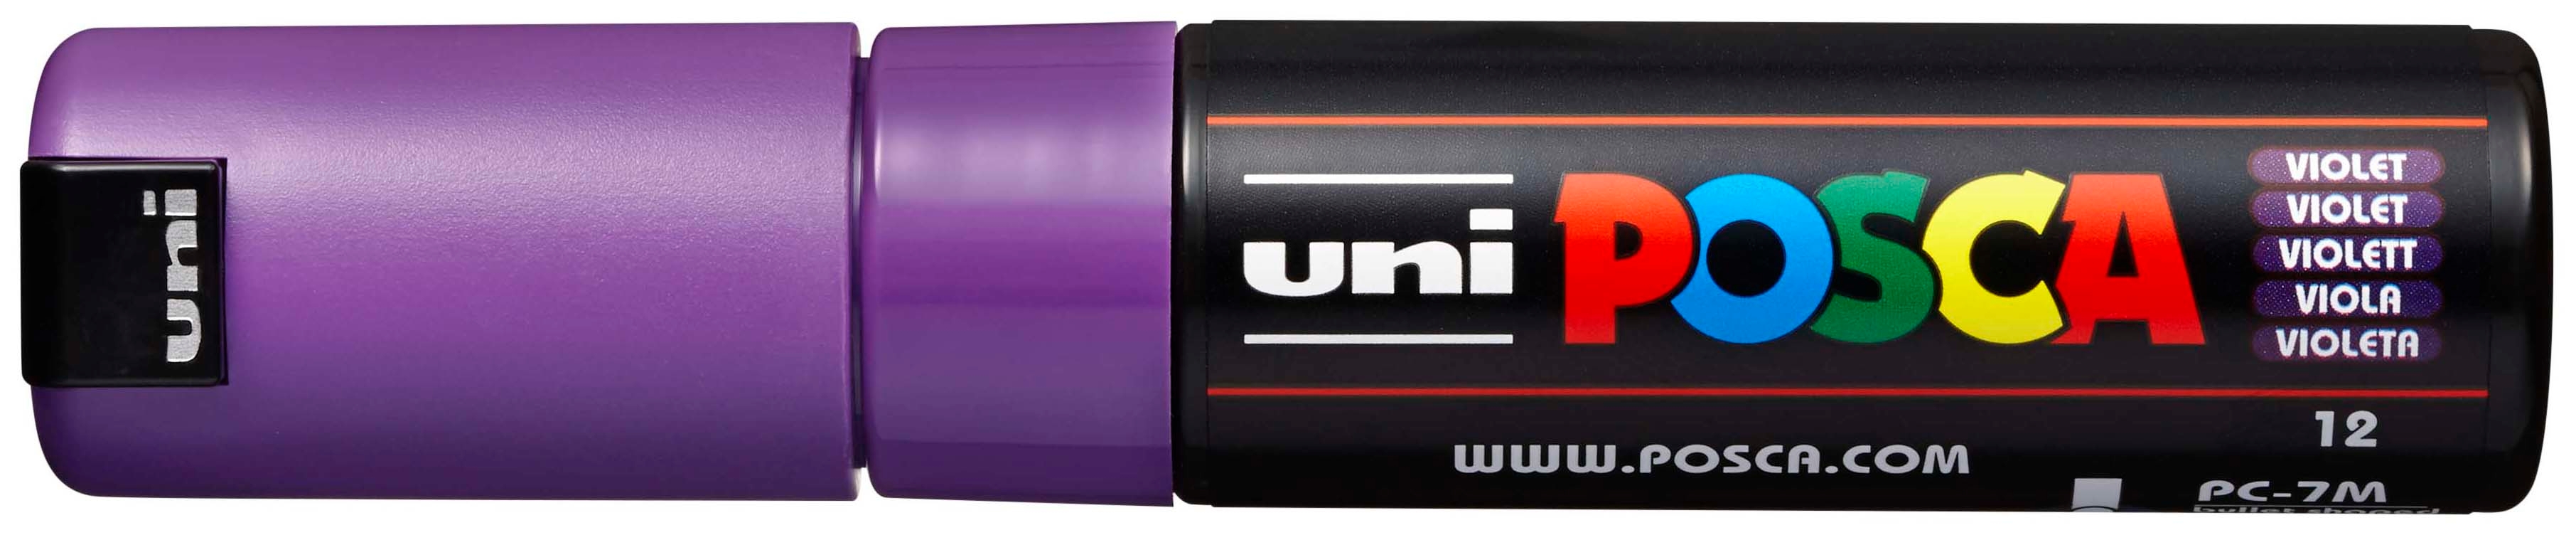 UNI-BALL Posca Marker 4.5-5.5mm PC-7M VIOLET violet